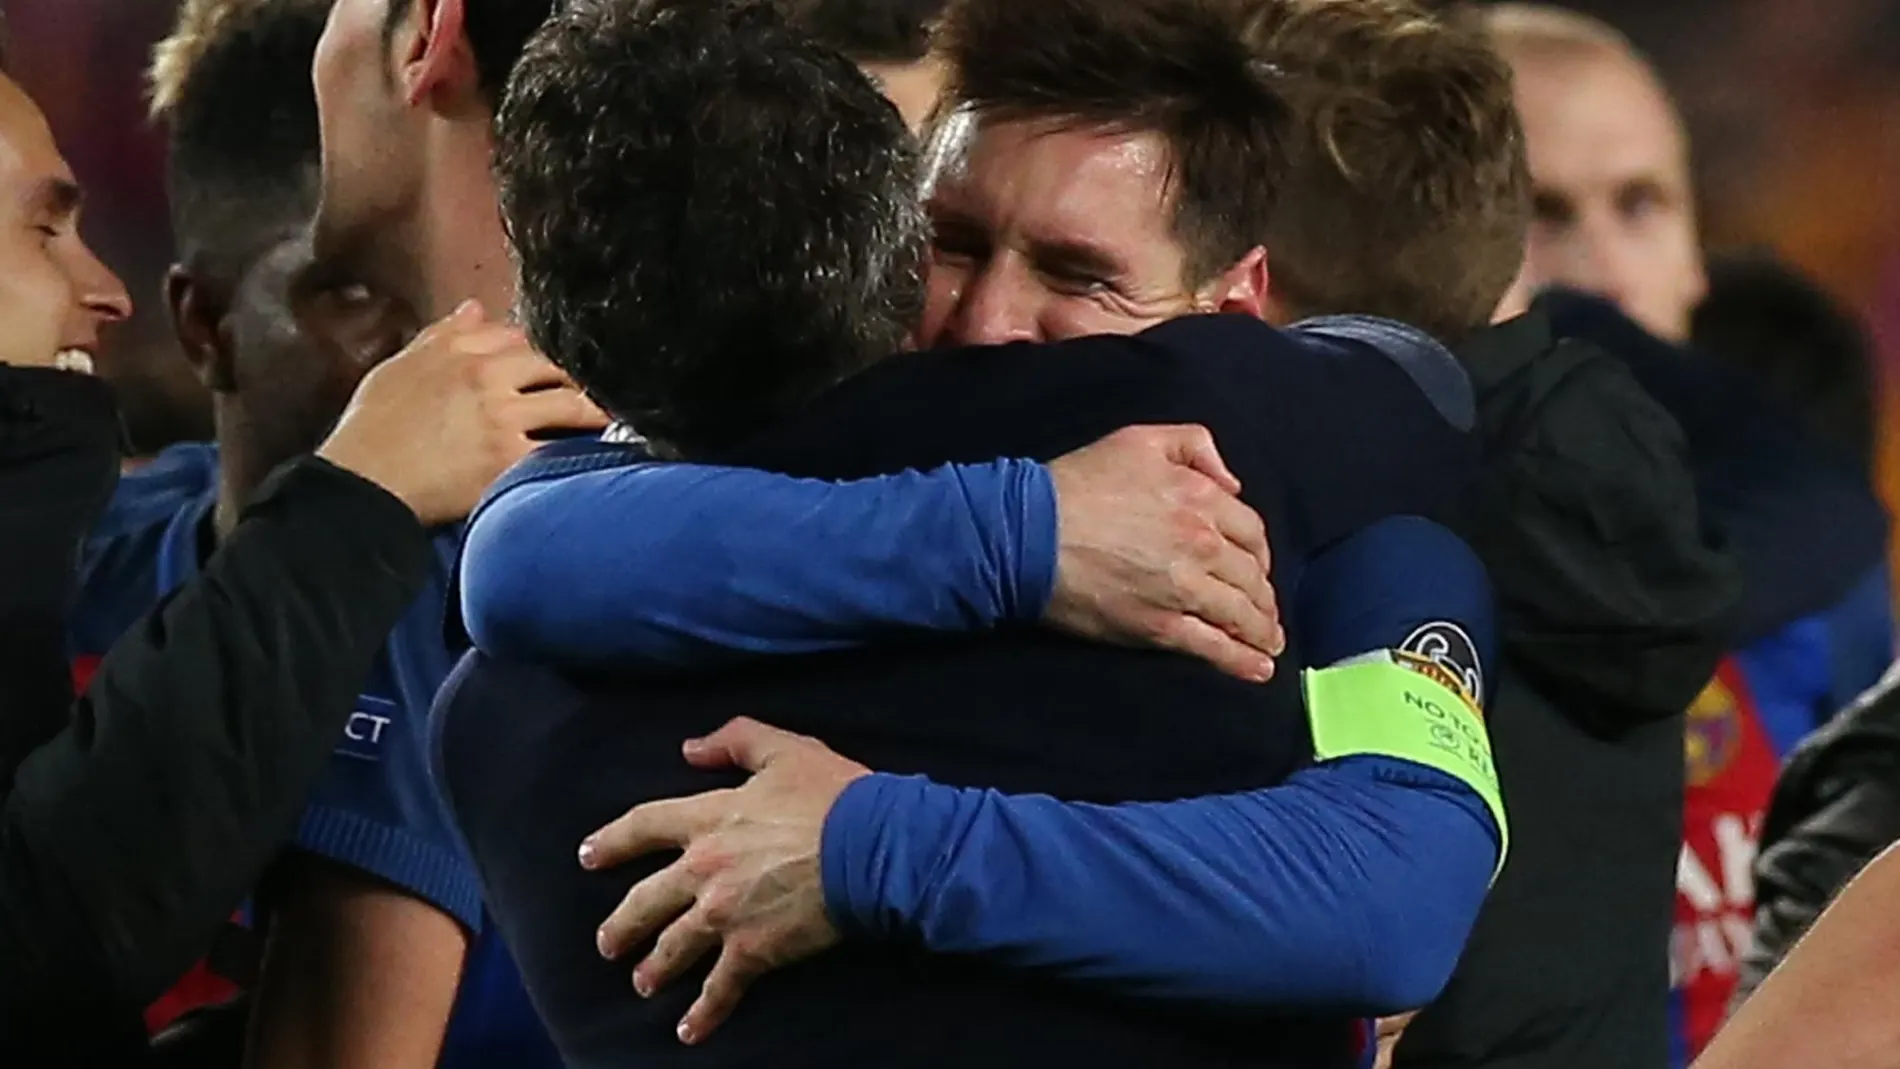 La foto de la paz entre Luis Enrique y Messi tras ganar la Champions en 2015